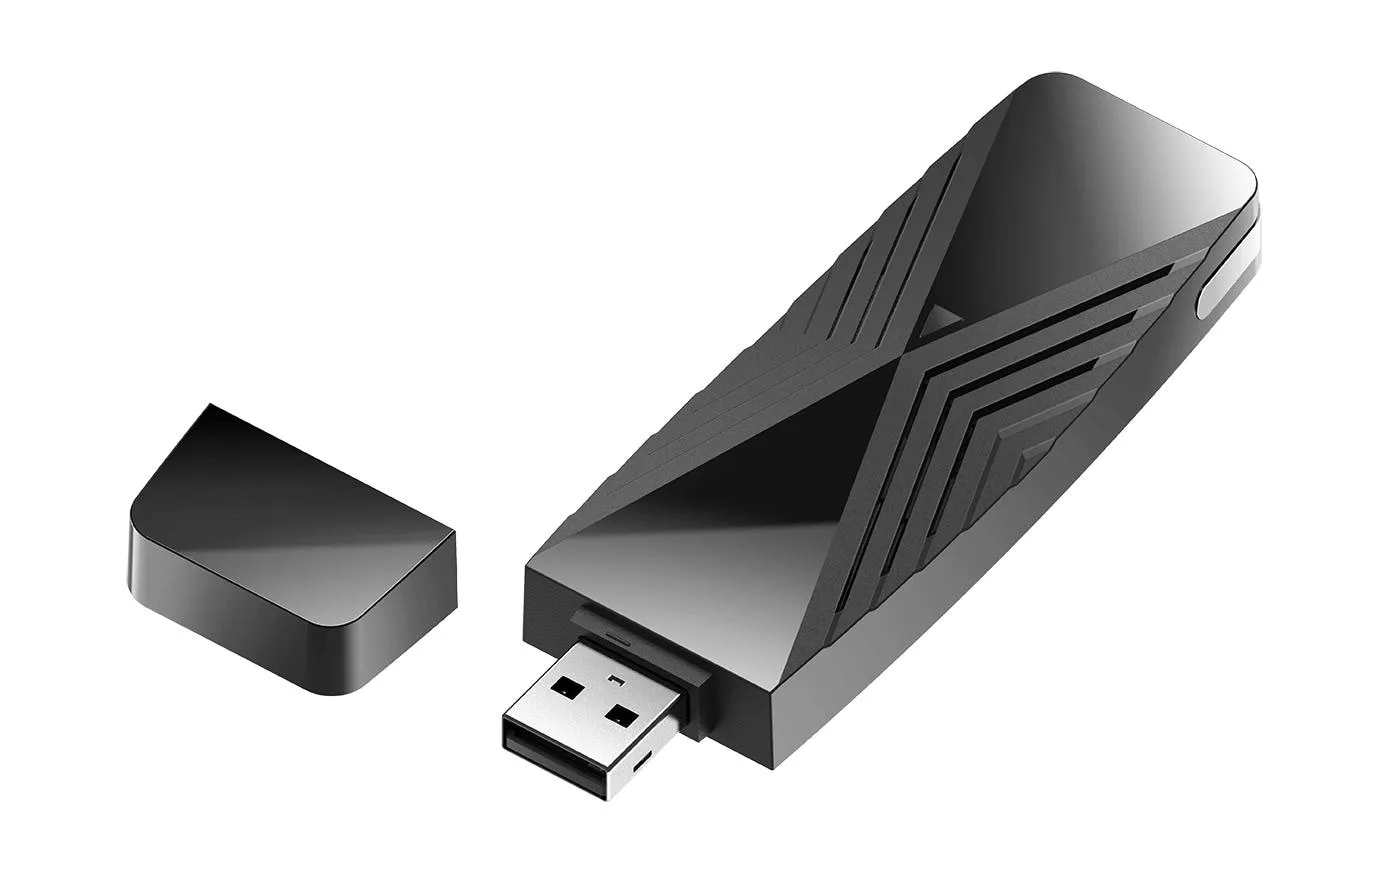 WLAN-AX chiavetta USB DWA-X1850